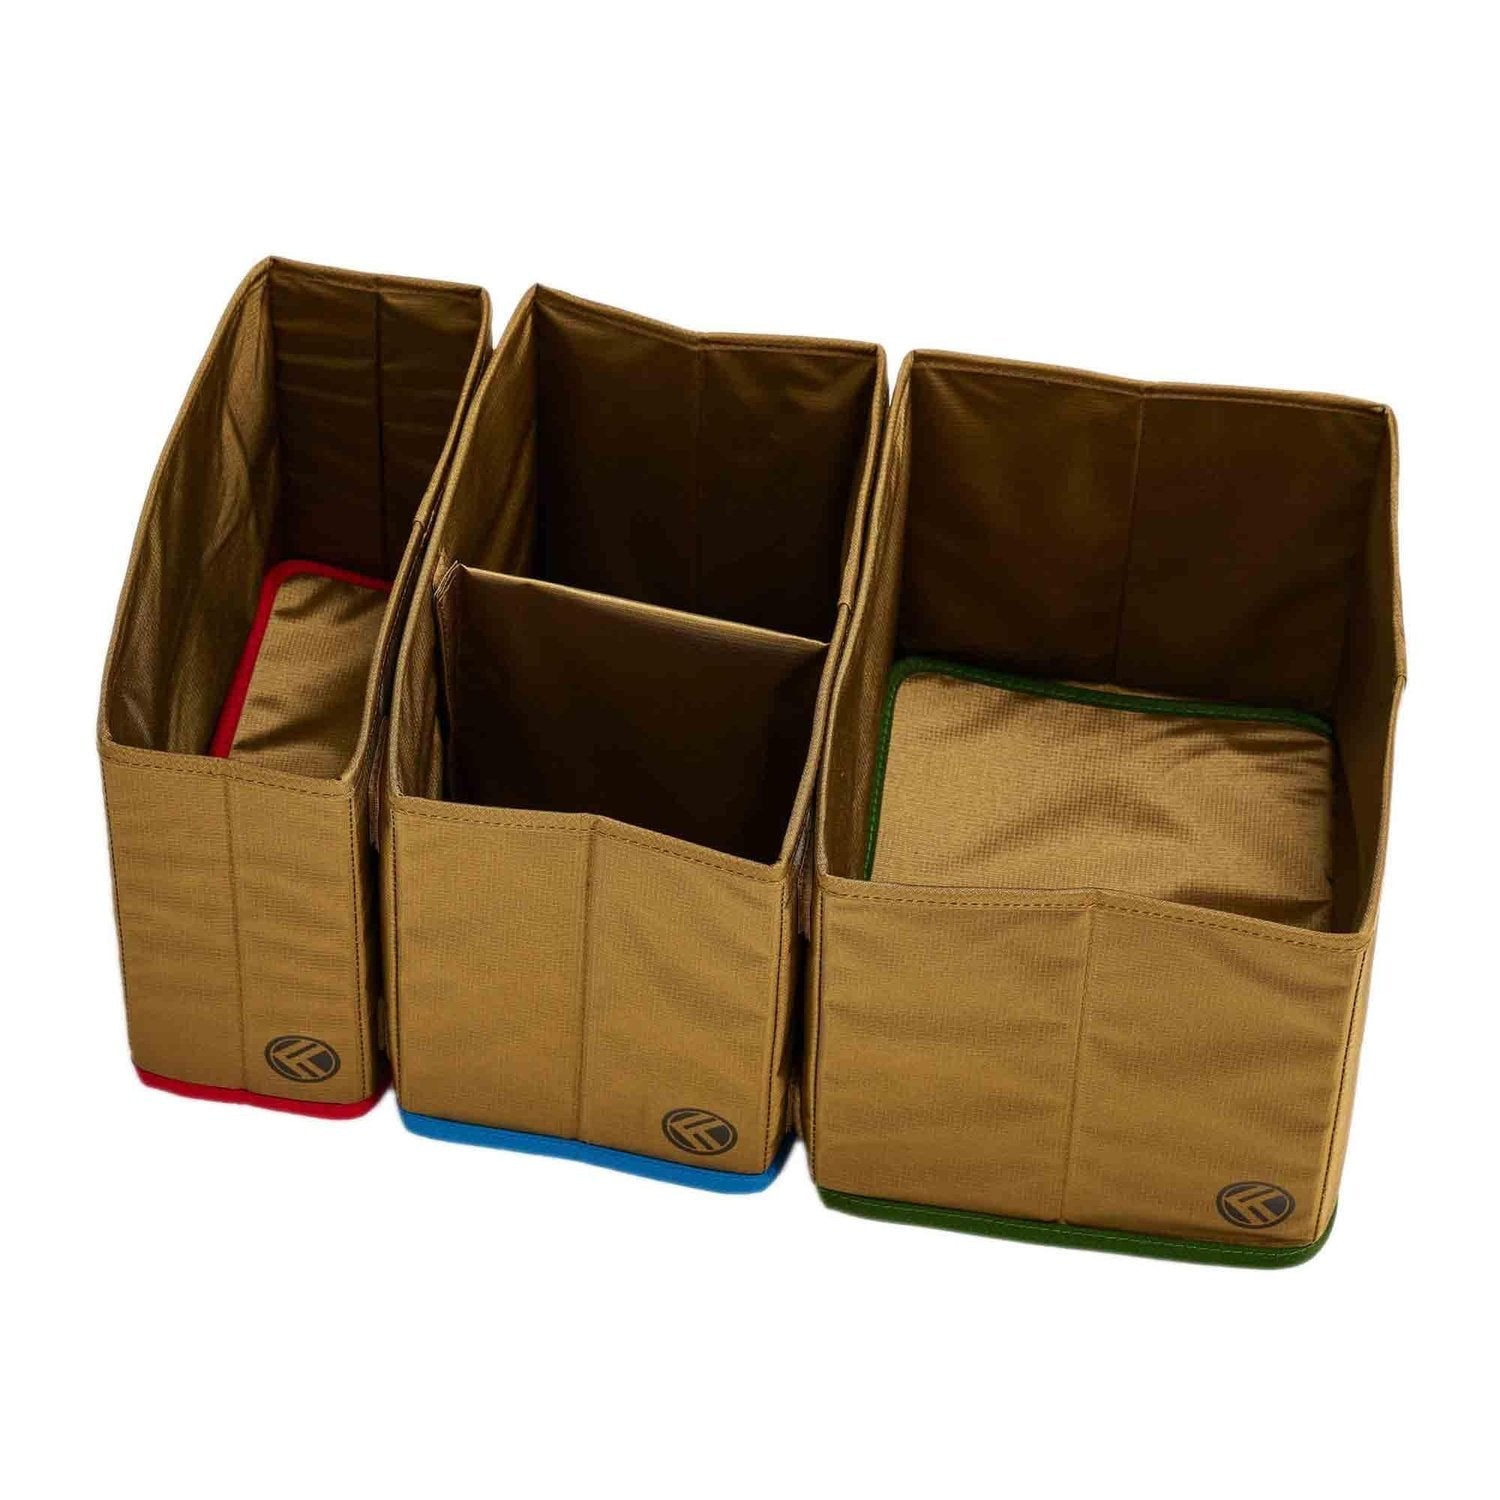 King Kong Bags King Kong Duffle Divider (Sporttaschen-Organiser) Sand kaufen bei HighPowered.ch